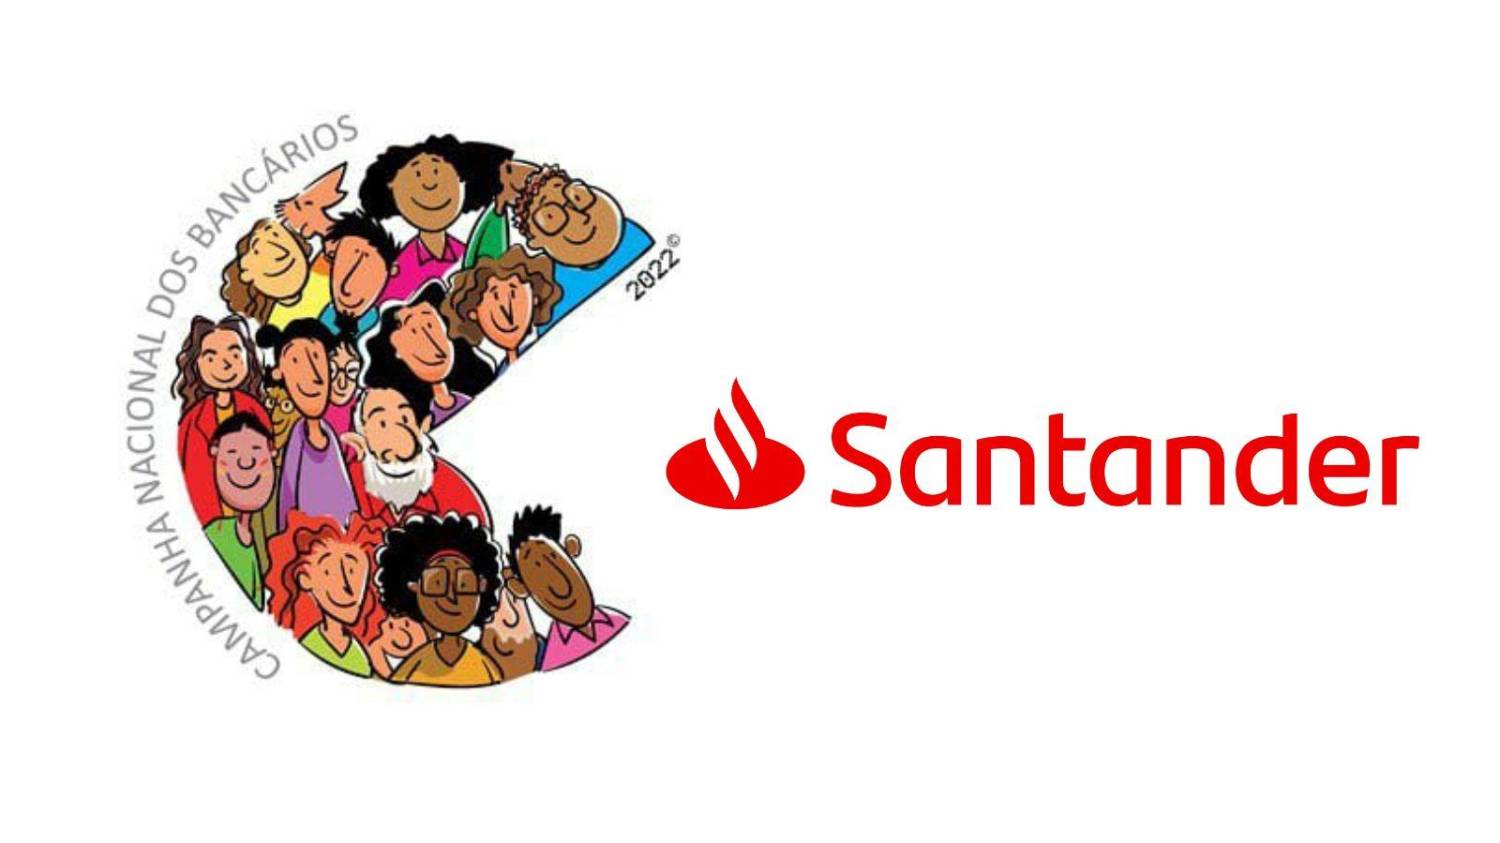 Minuta de reivindicações específicas foi entregue ao Santander